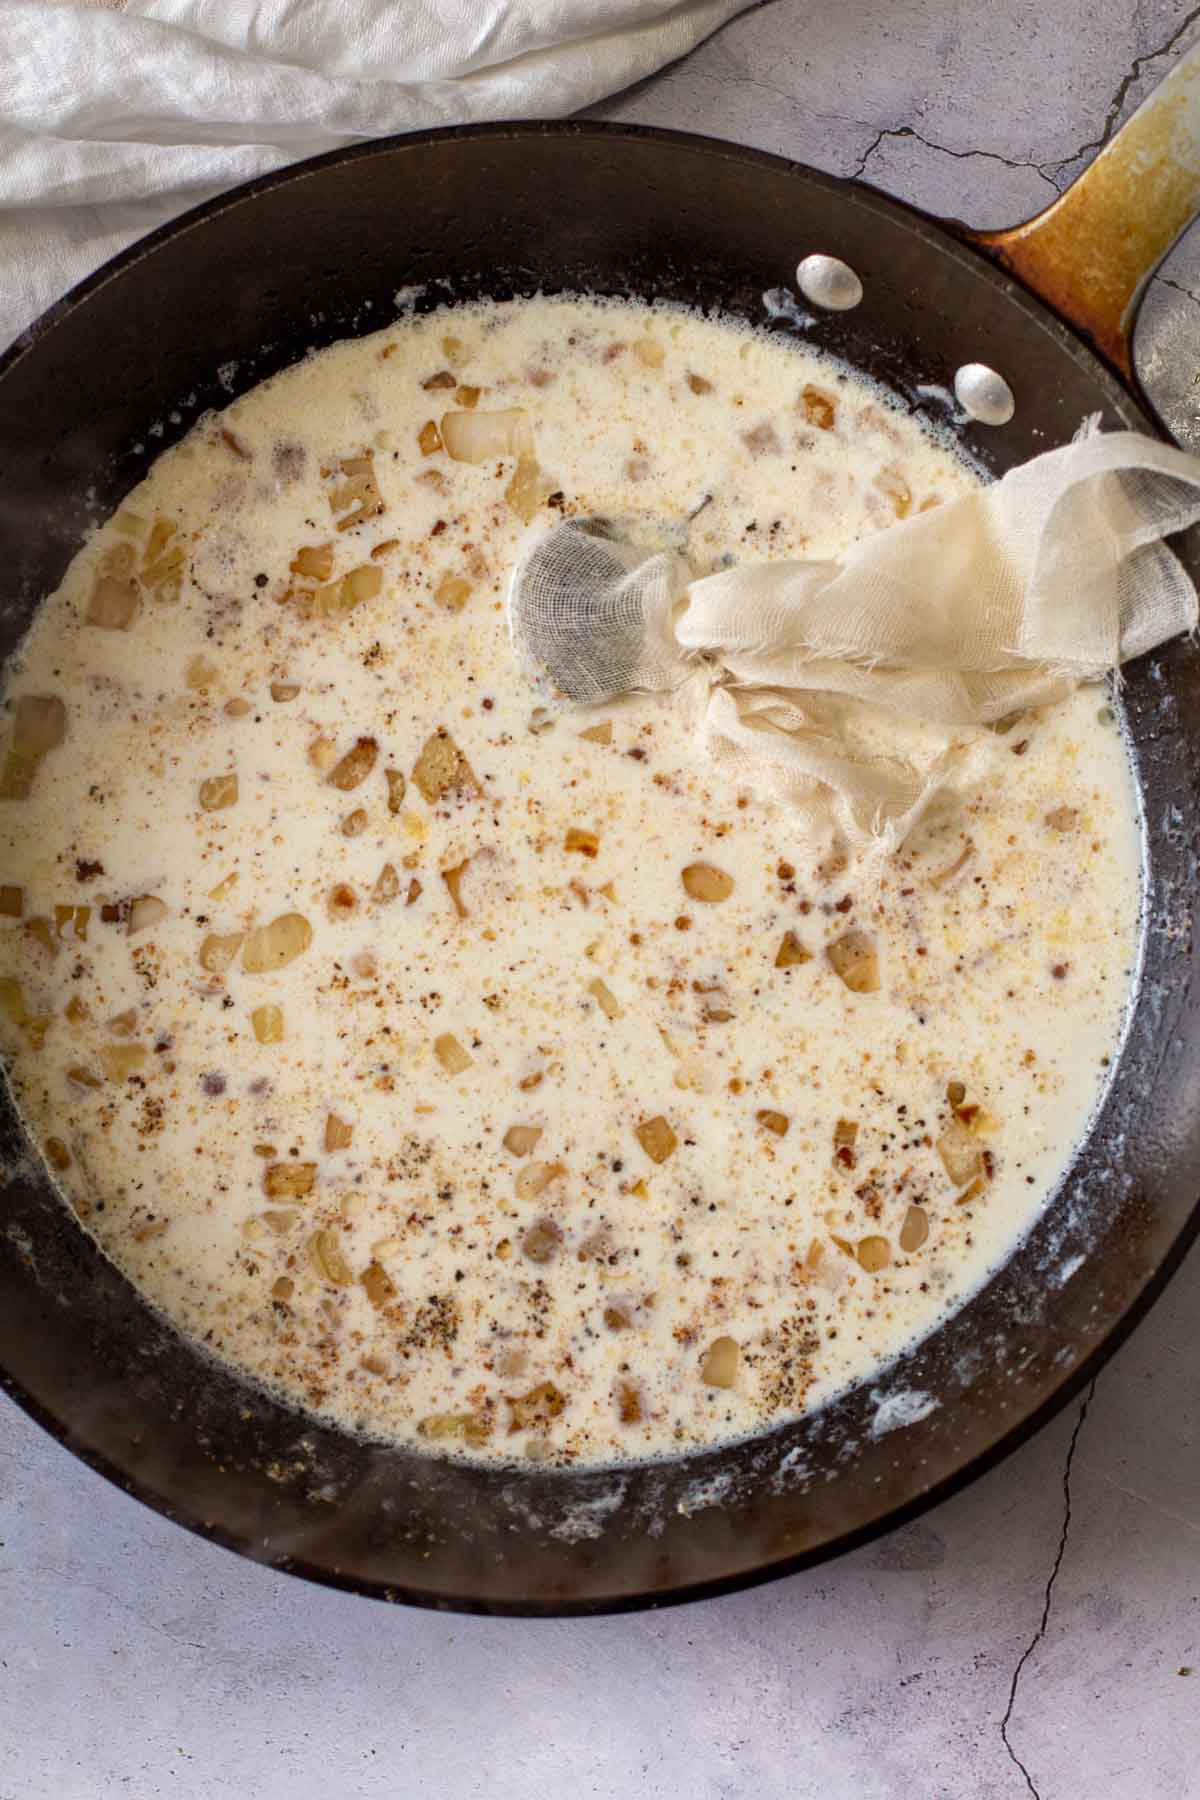 Making bachamel sauce in a large fry pan.